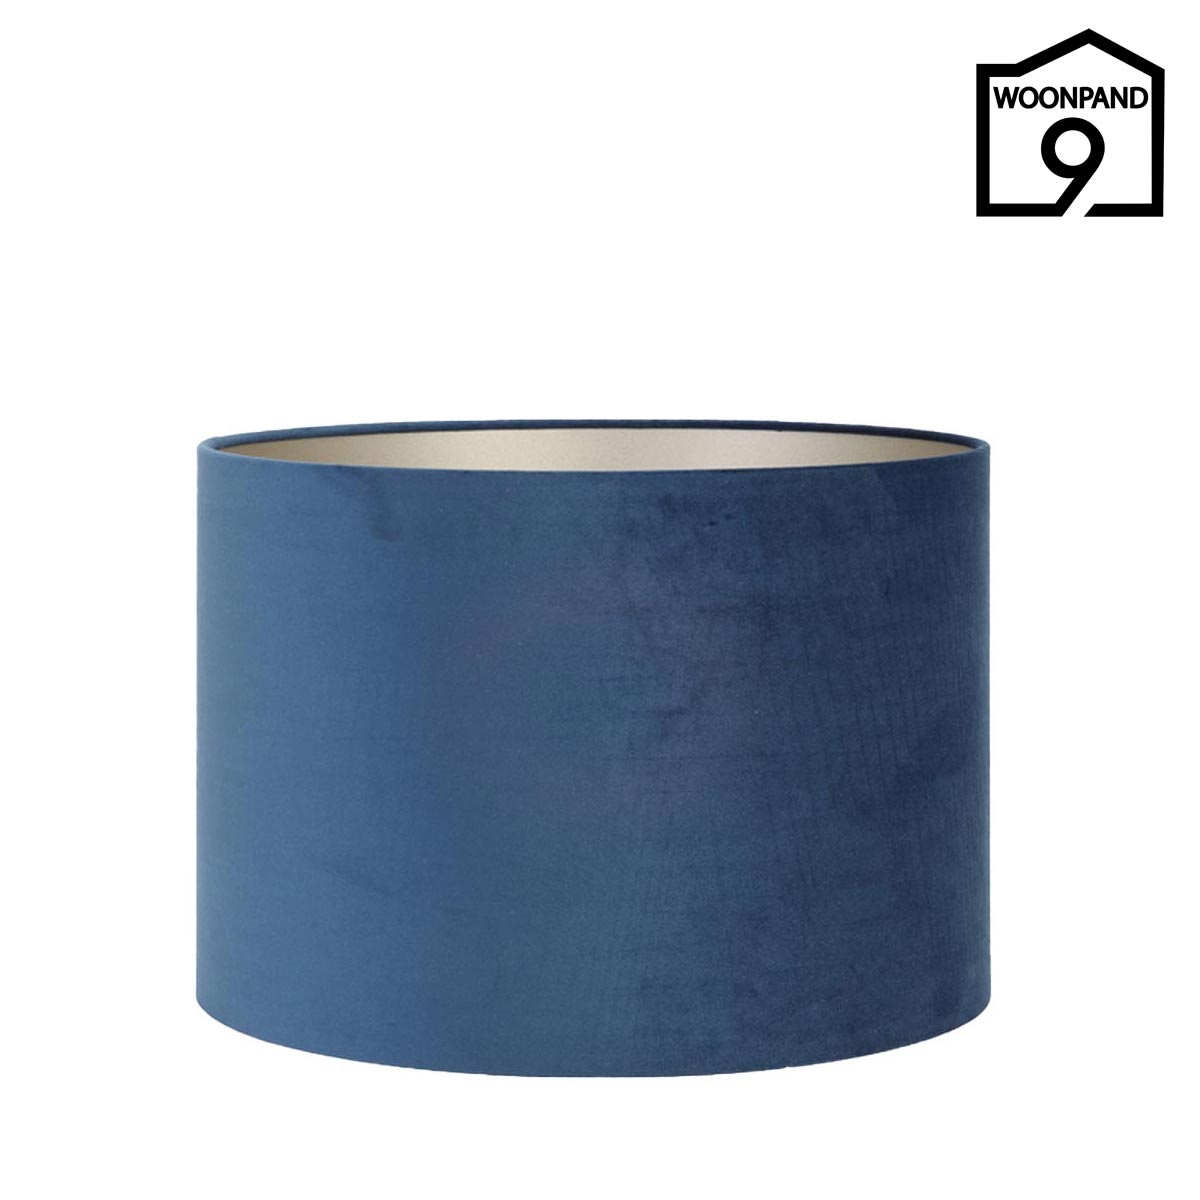 Lampenkap velvet blauw 50cm rond & Living - Woonpand 9